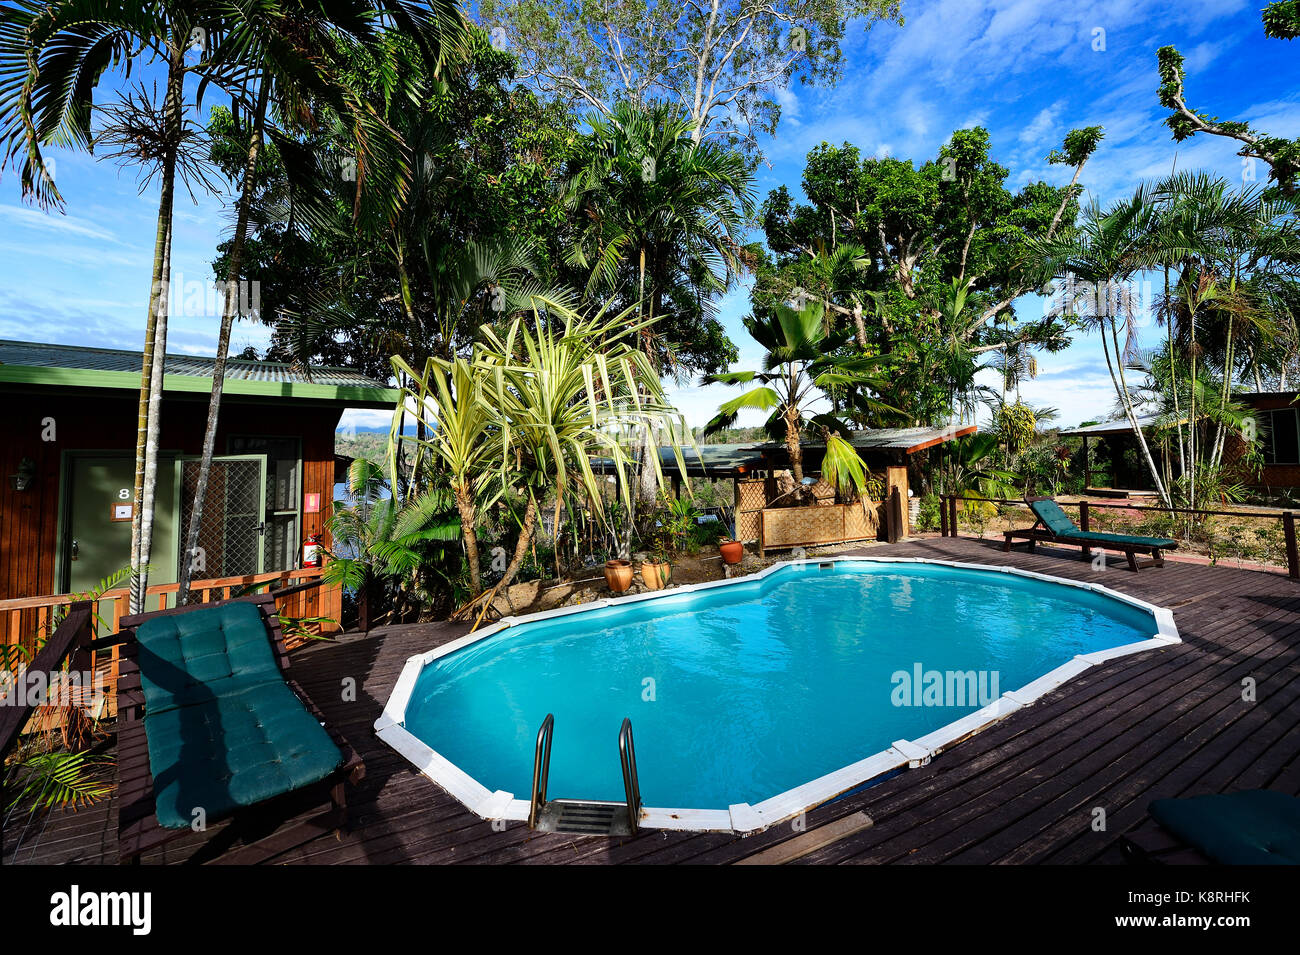 Piscine de la plongée tufi resort, hotel, tufi, Papouasie-Nouvelle-Guinée, l'Océanie Banque D'Images